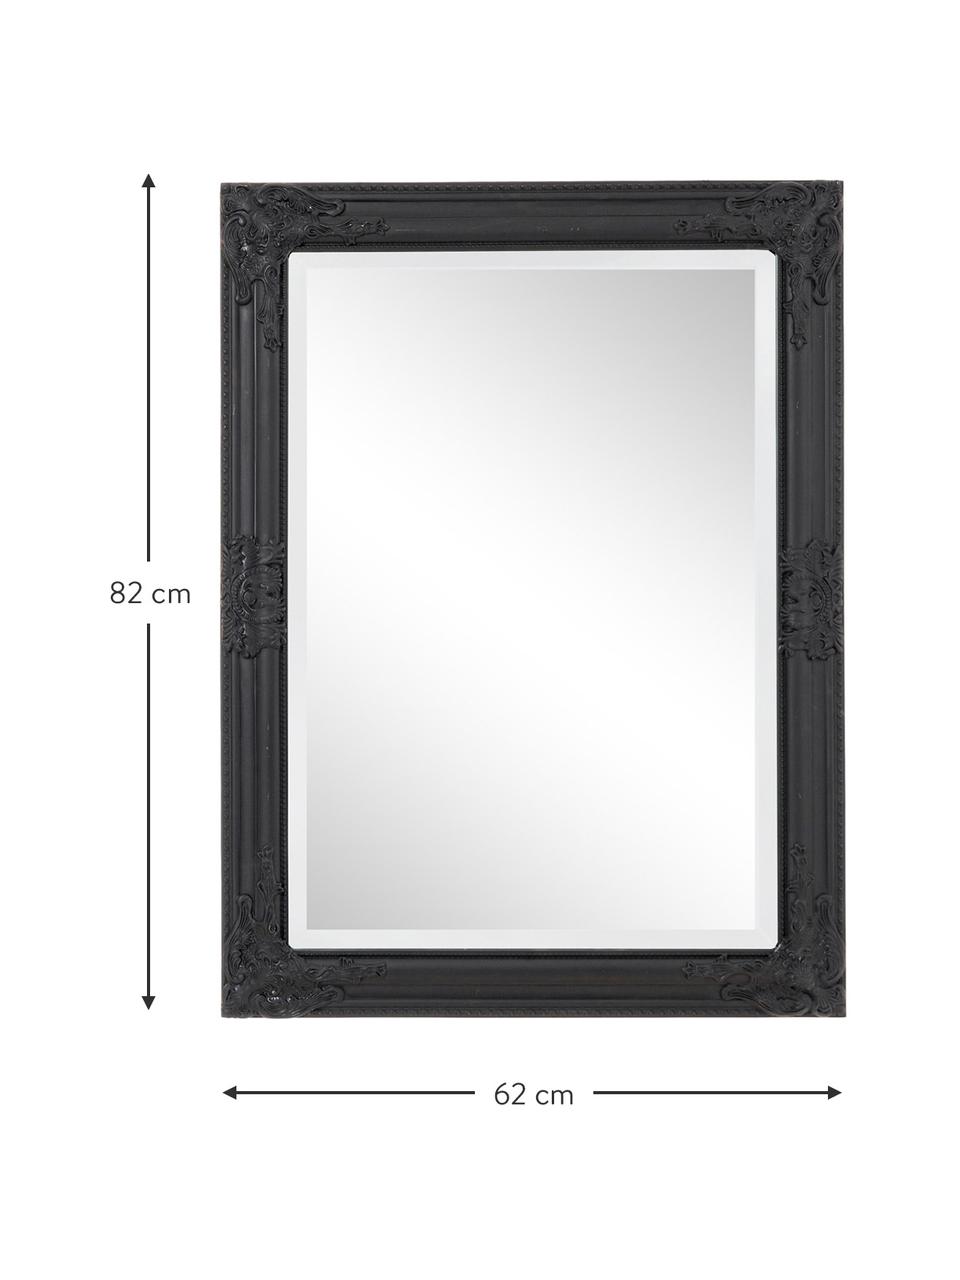 Eckiger Wandspiegel Miro mit schwarzem Paulowniaholzrahmen, Rahmen: Paulowniaholz, beschichte, Spiegelfläche: Spiegelglas, Schwarz, B 62 x H 82 cm